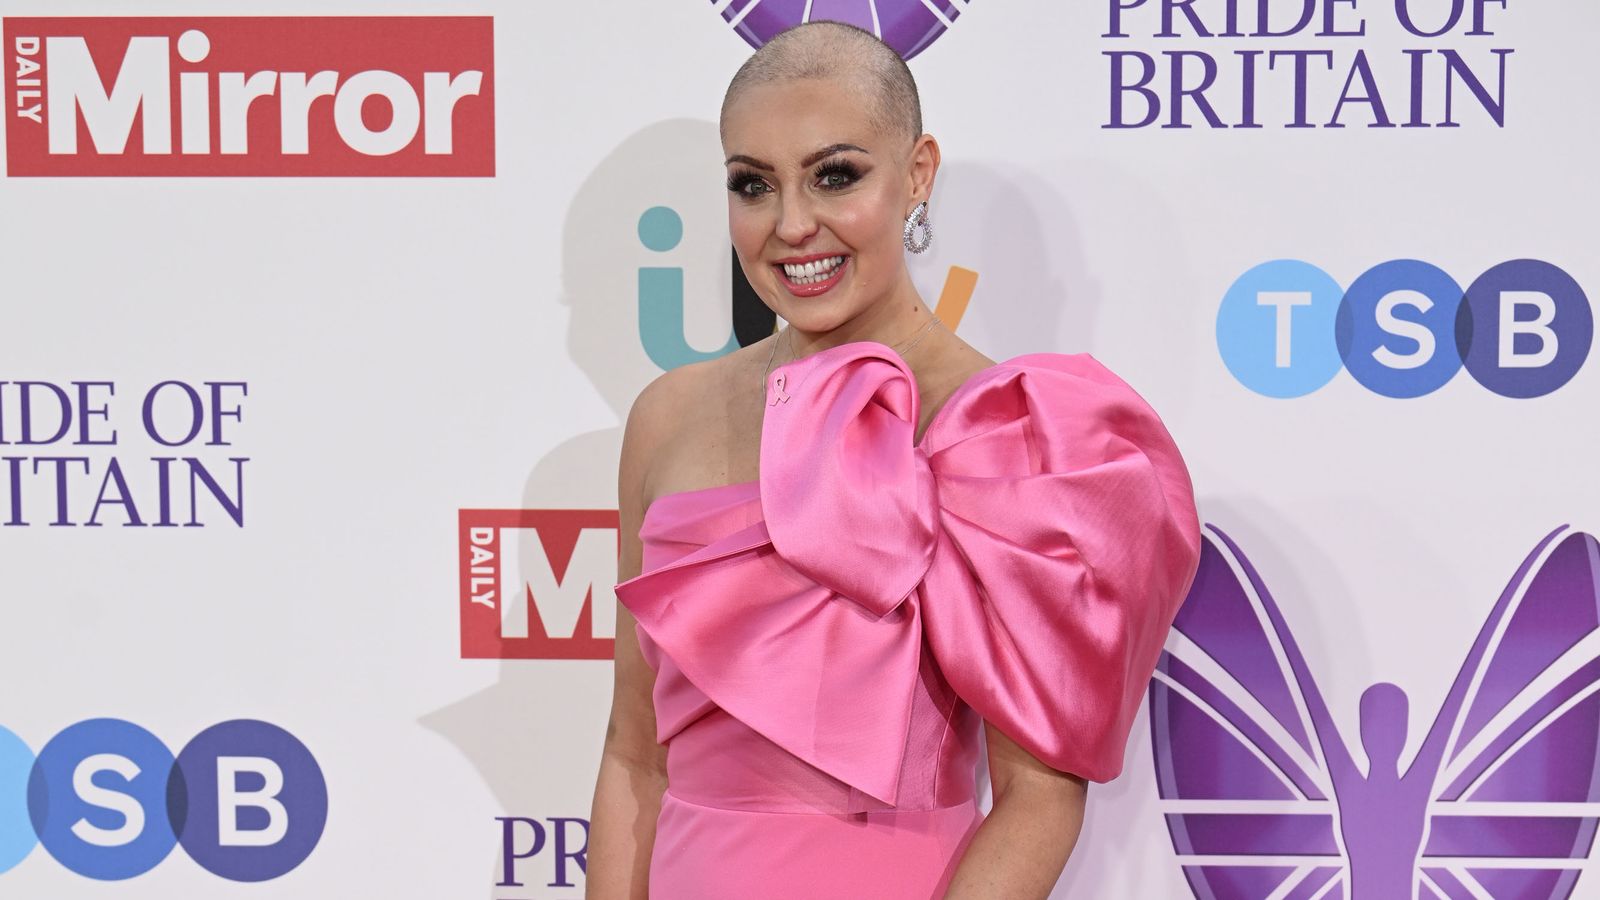 Ейми Даудън: Звездата от Strictly Come Dancing казва, че „няма доказателства за заболяване“ след лечение на рак